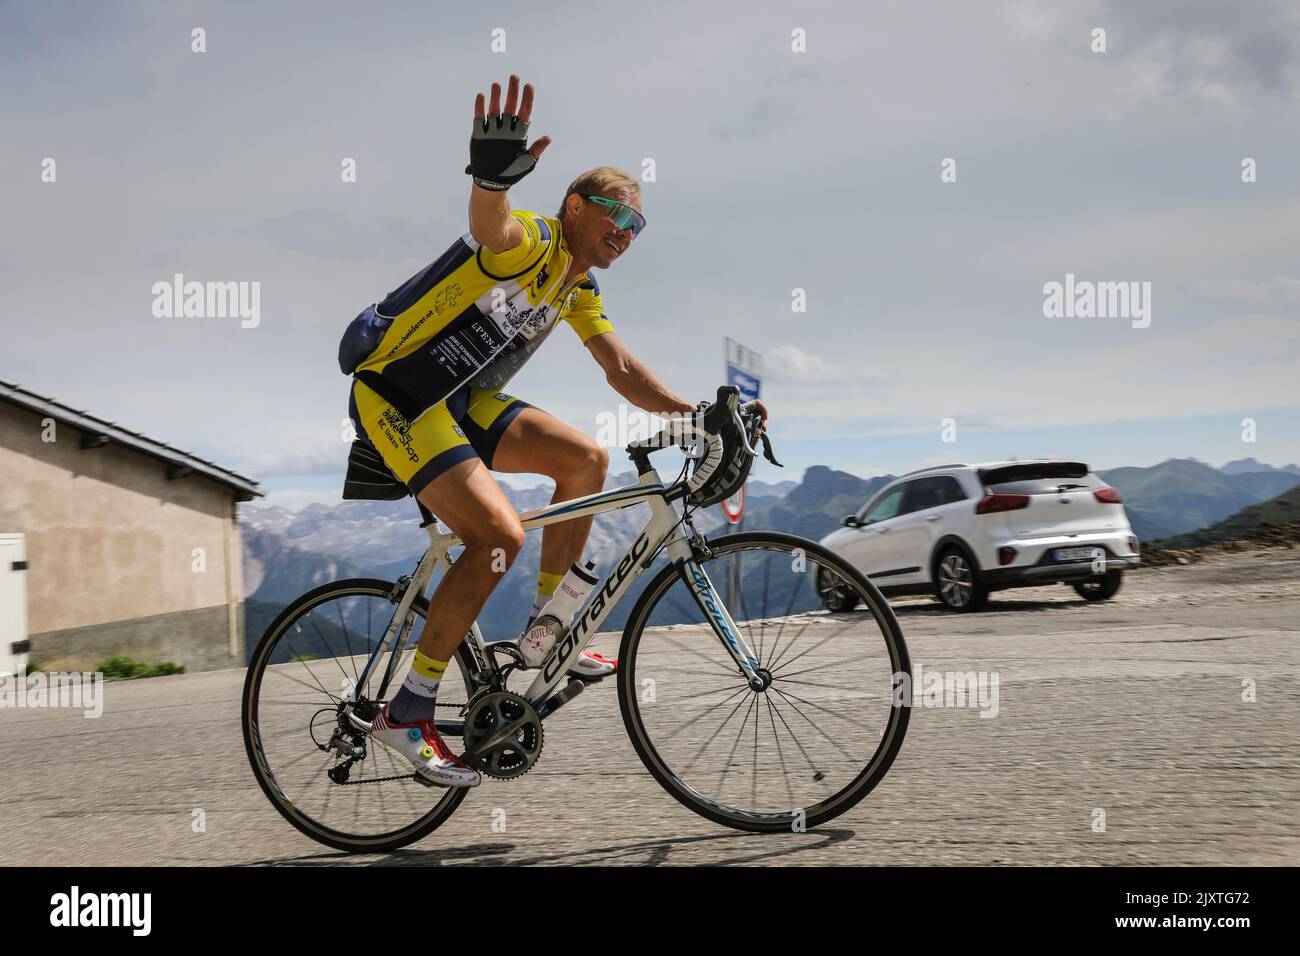 El ciclista sonríe y ondea mientras asciende por un camino de montaña en las Dolomitas, Italia. Foto de stock